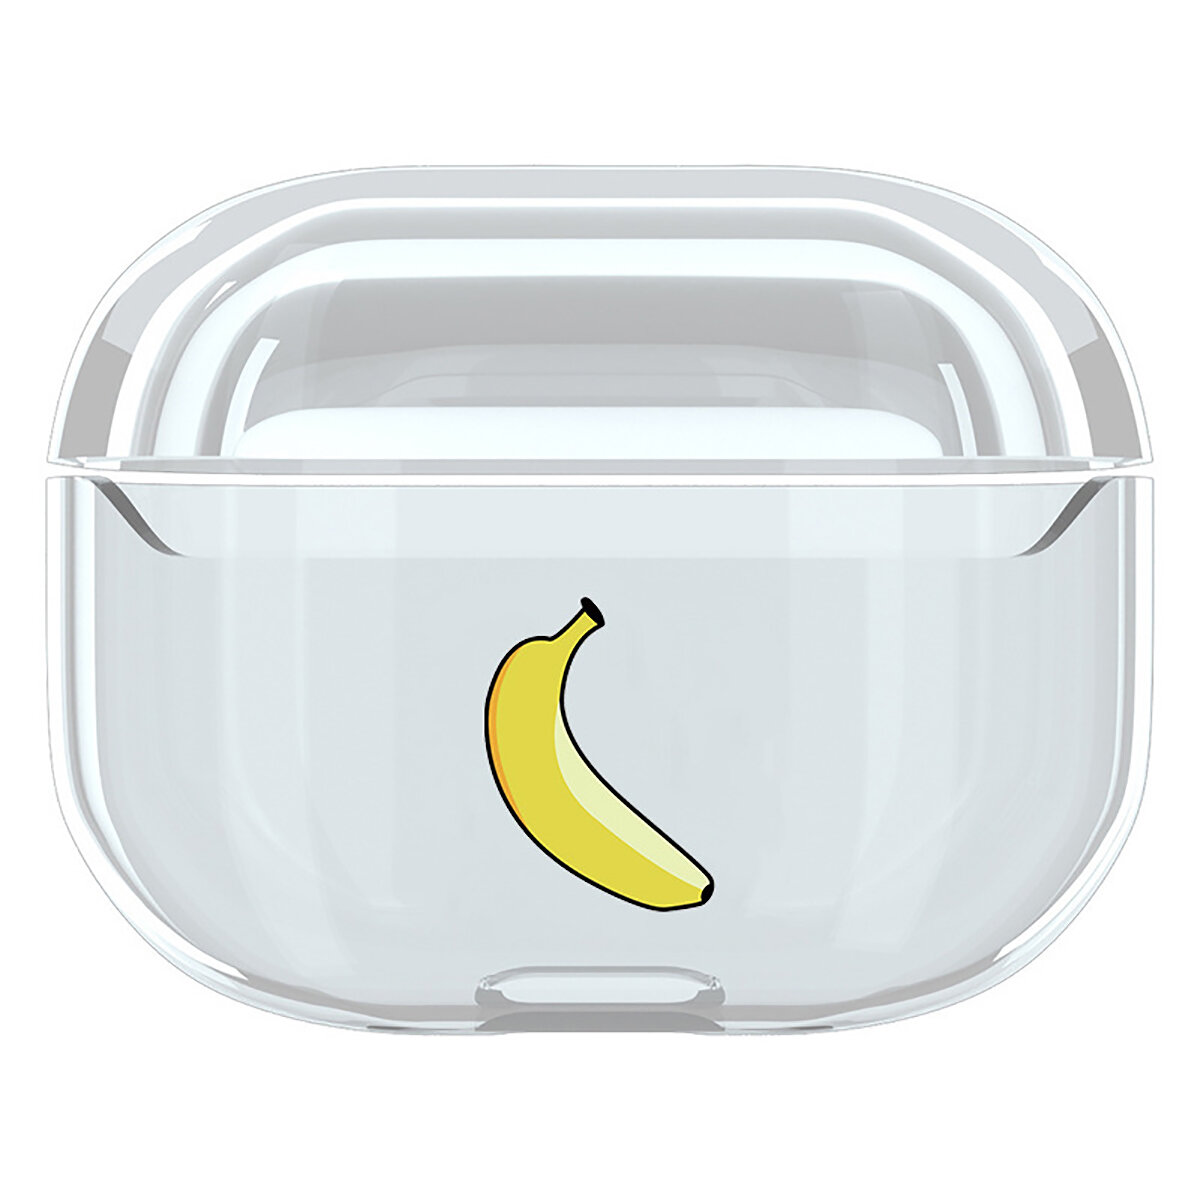 

Милый мультфильм Шаблон Прозрачный жесткий противоударный защитный чехол Чехол Наушник Хранение Чехол для Apple для AirP